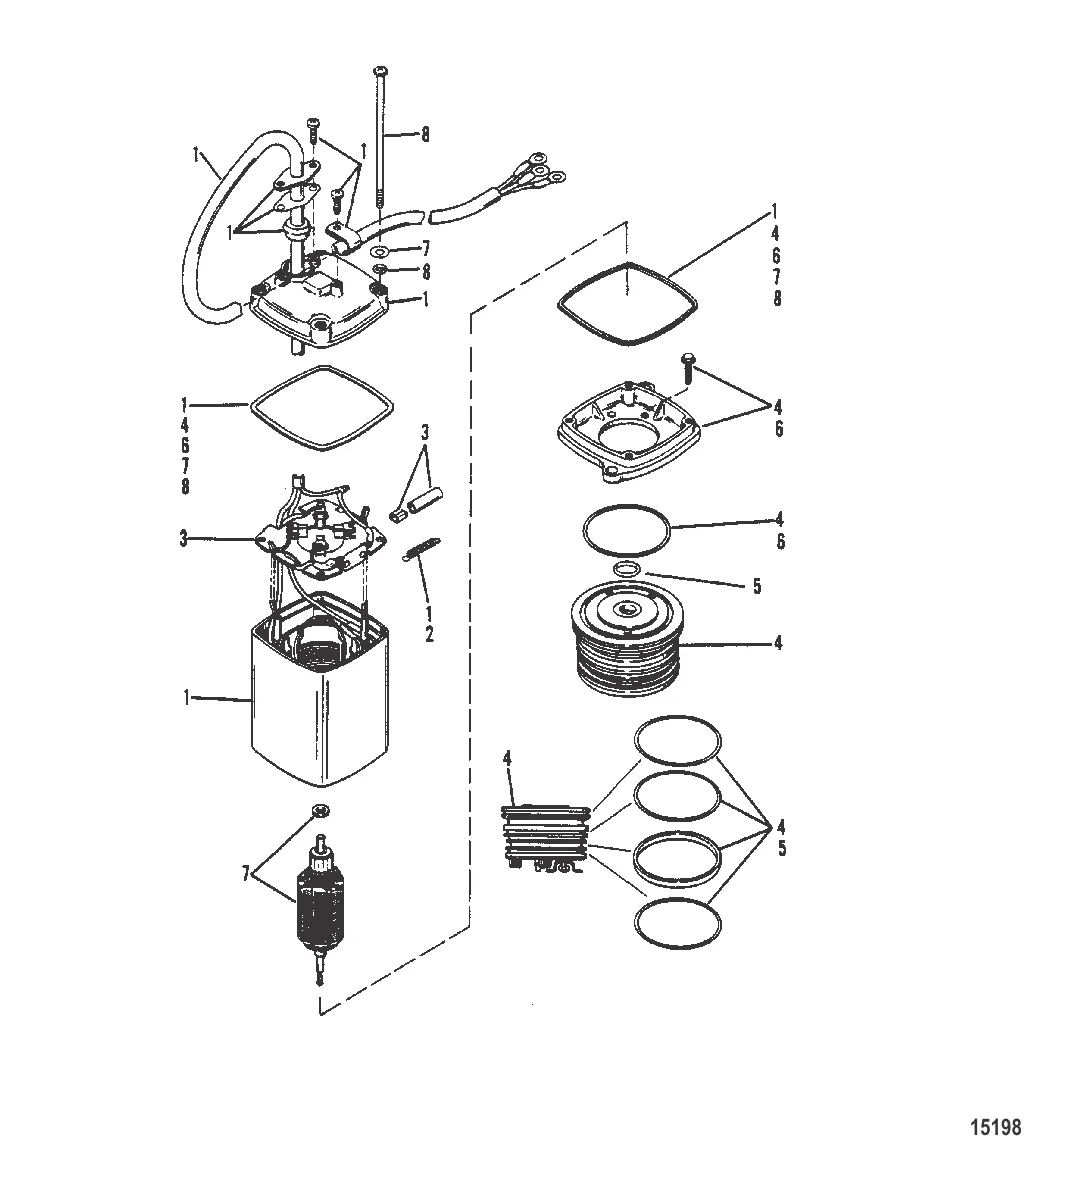 Power Trim Pump (Eaton Rectangular Motor-0C159199 and Below)